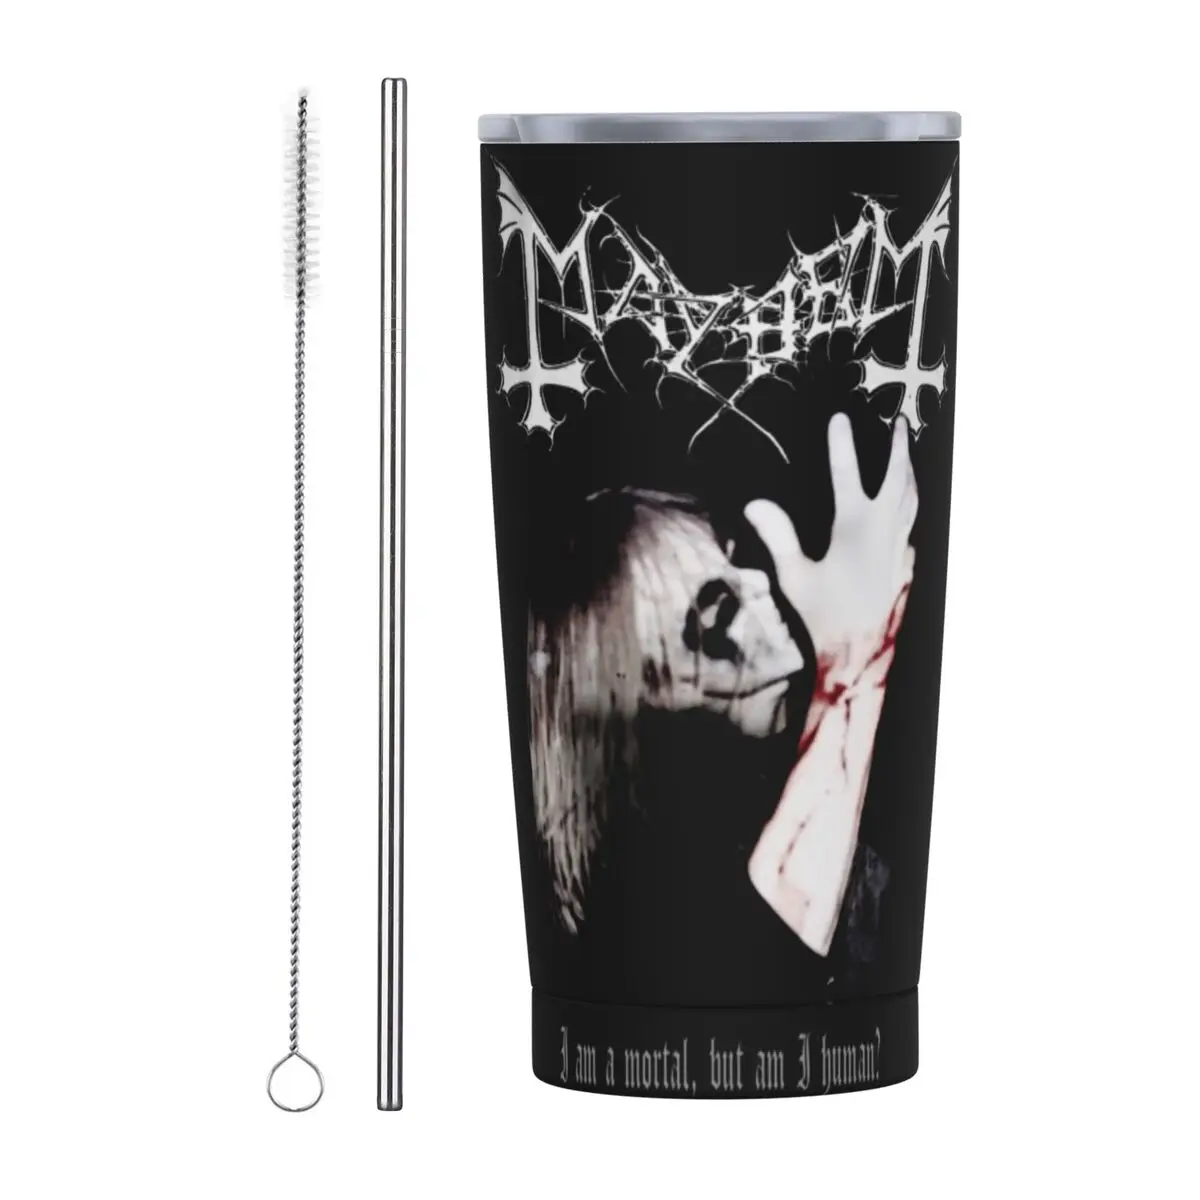 

Mayhem мертвой черный металлический изолированный стакан с соломинкой и крышкой из нержавеющей стали дорожная кофейная кружка 20 унций кружки для смузи чая чашка